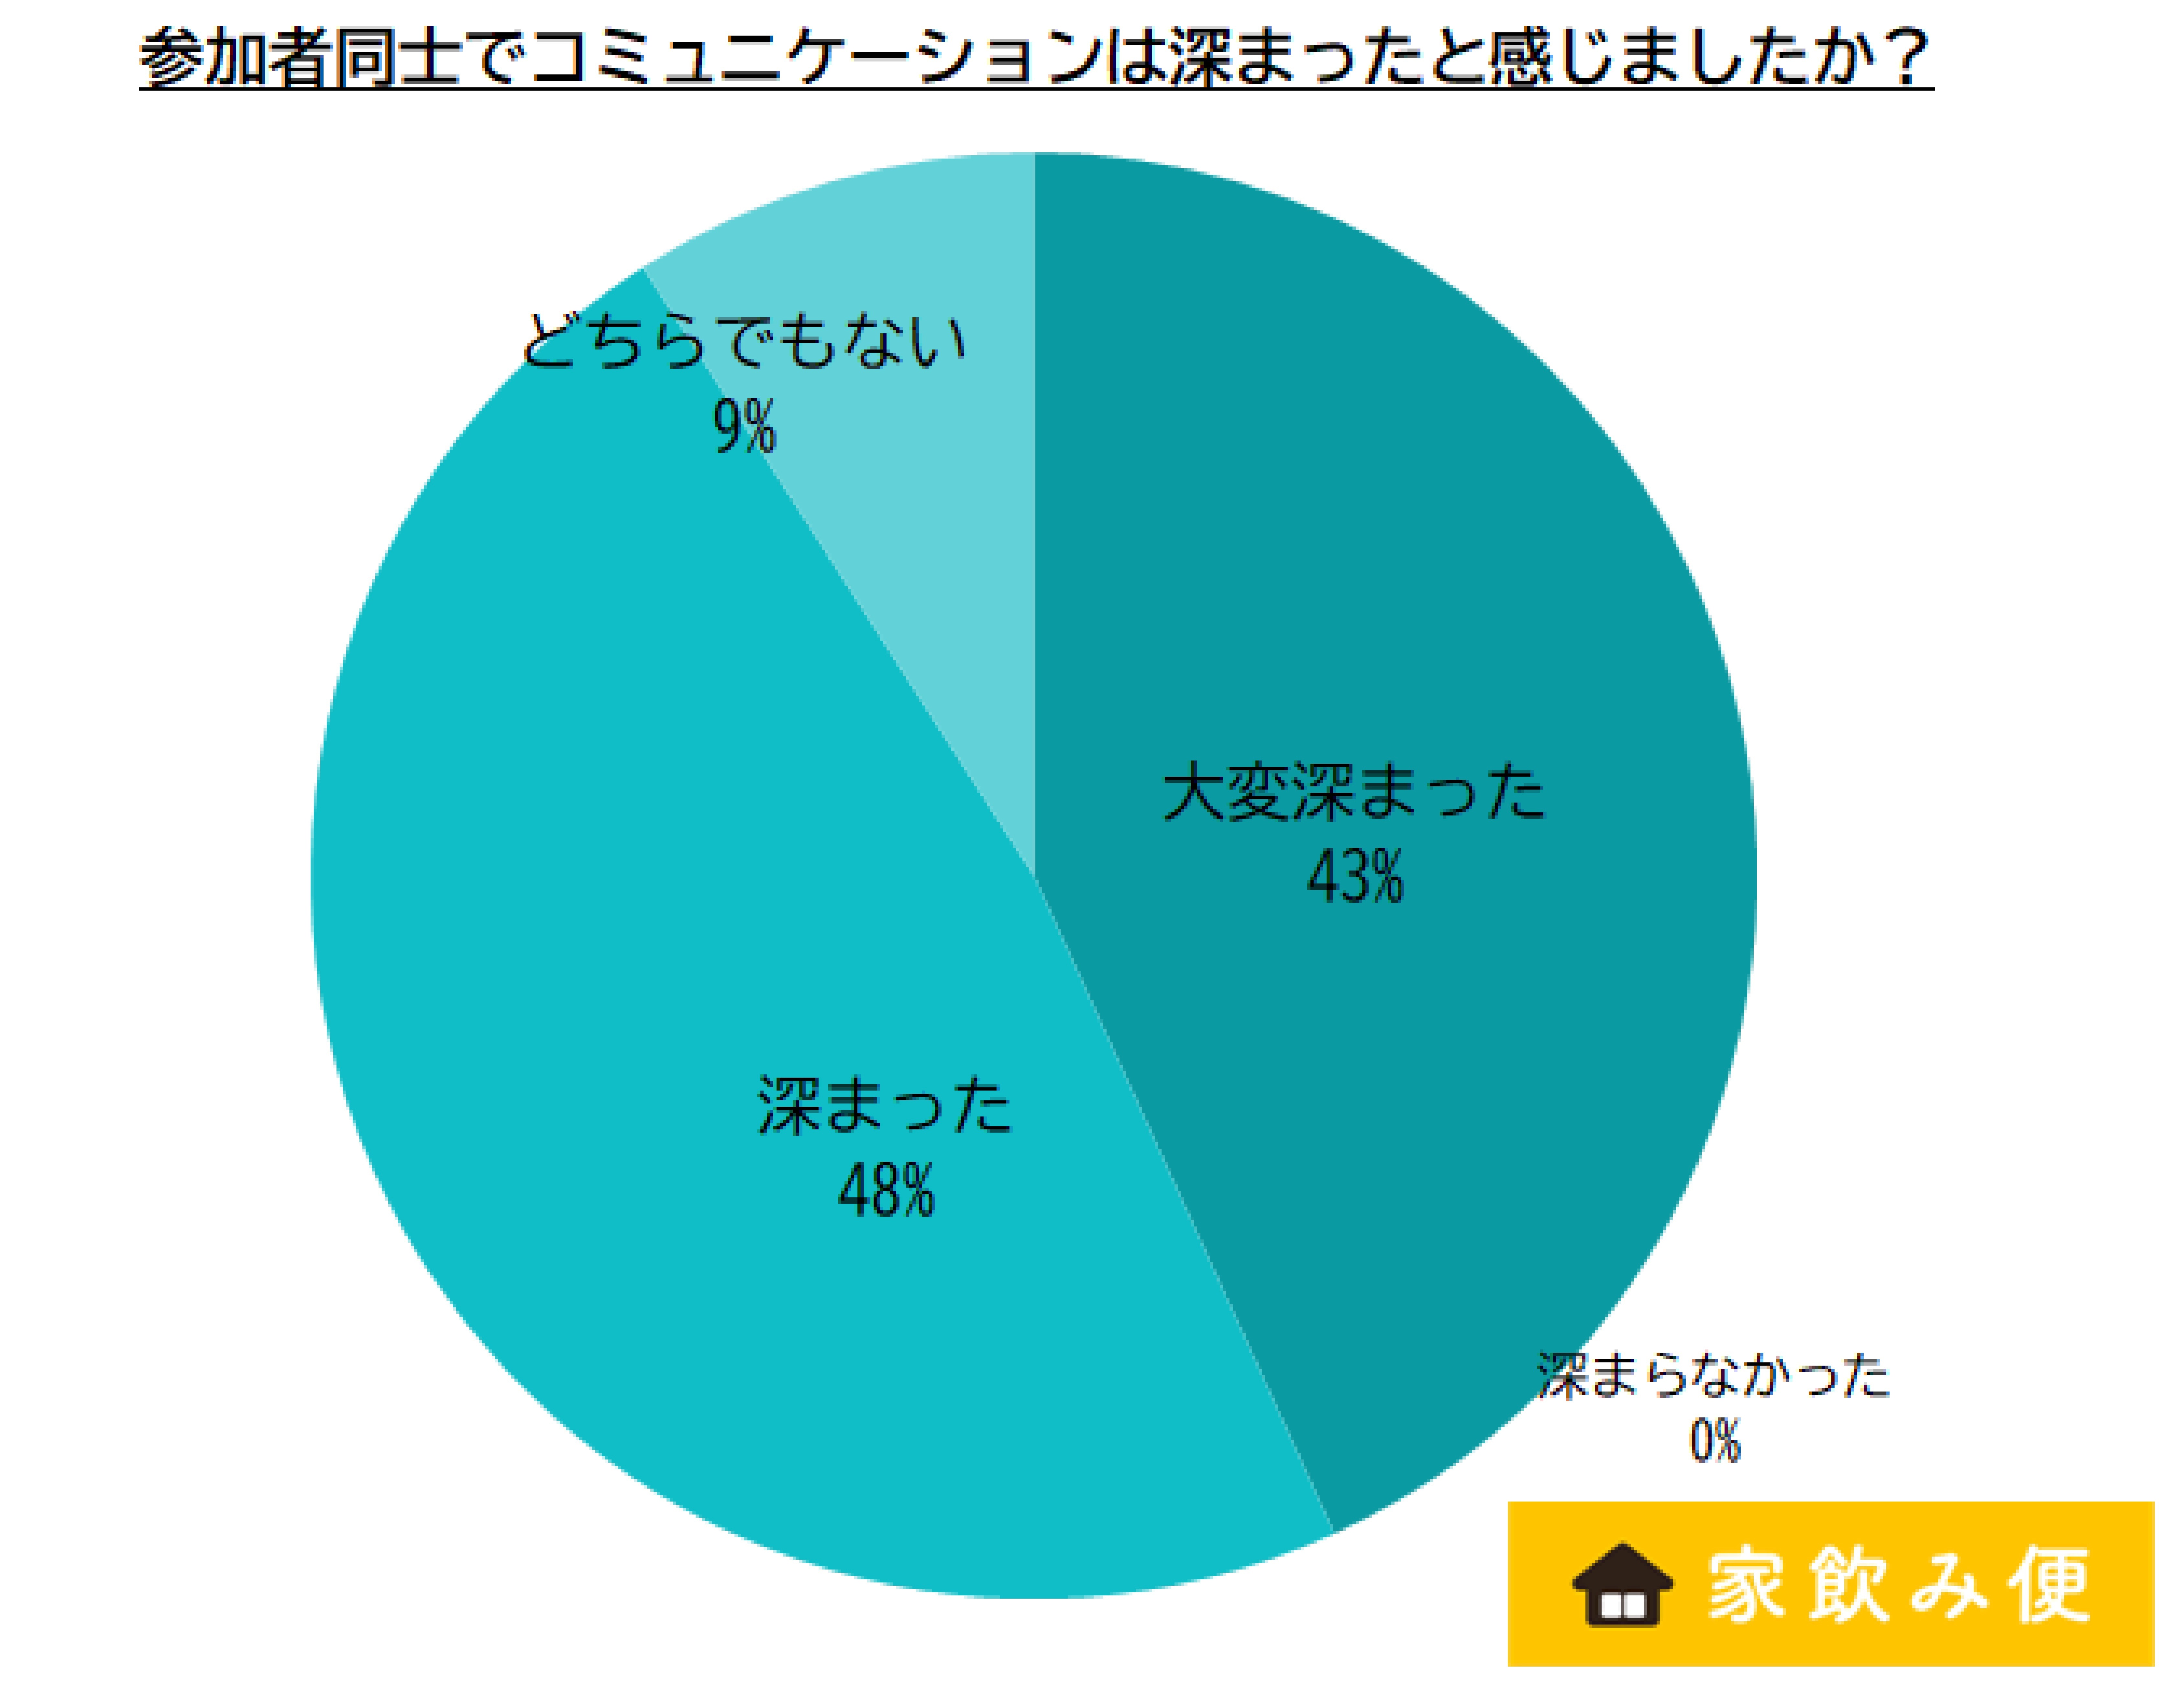  _633_http://www.apcompany.jp/news/2021/05/06/%E9%96%A2%E4%BF%82%E6%B7%B1%E5%BA%A6.jpg